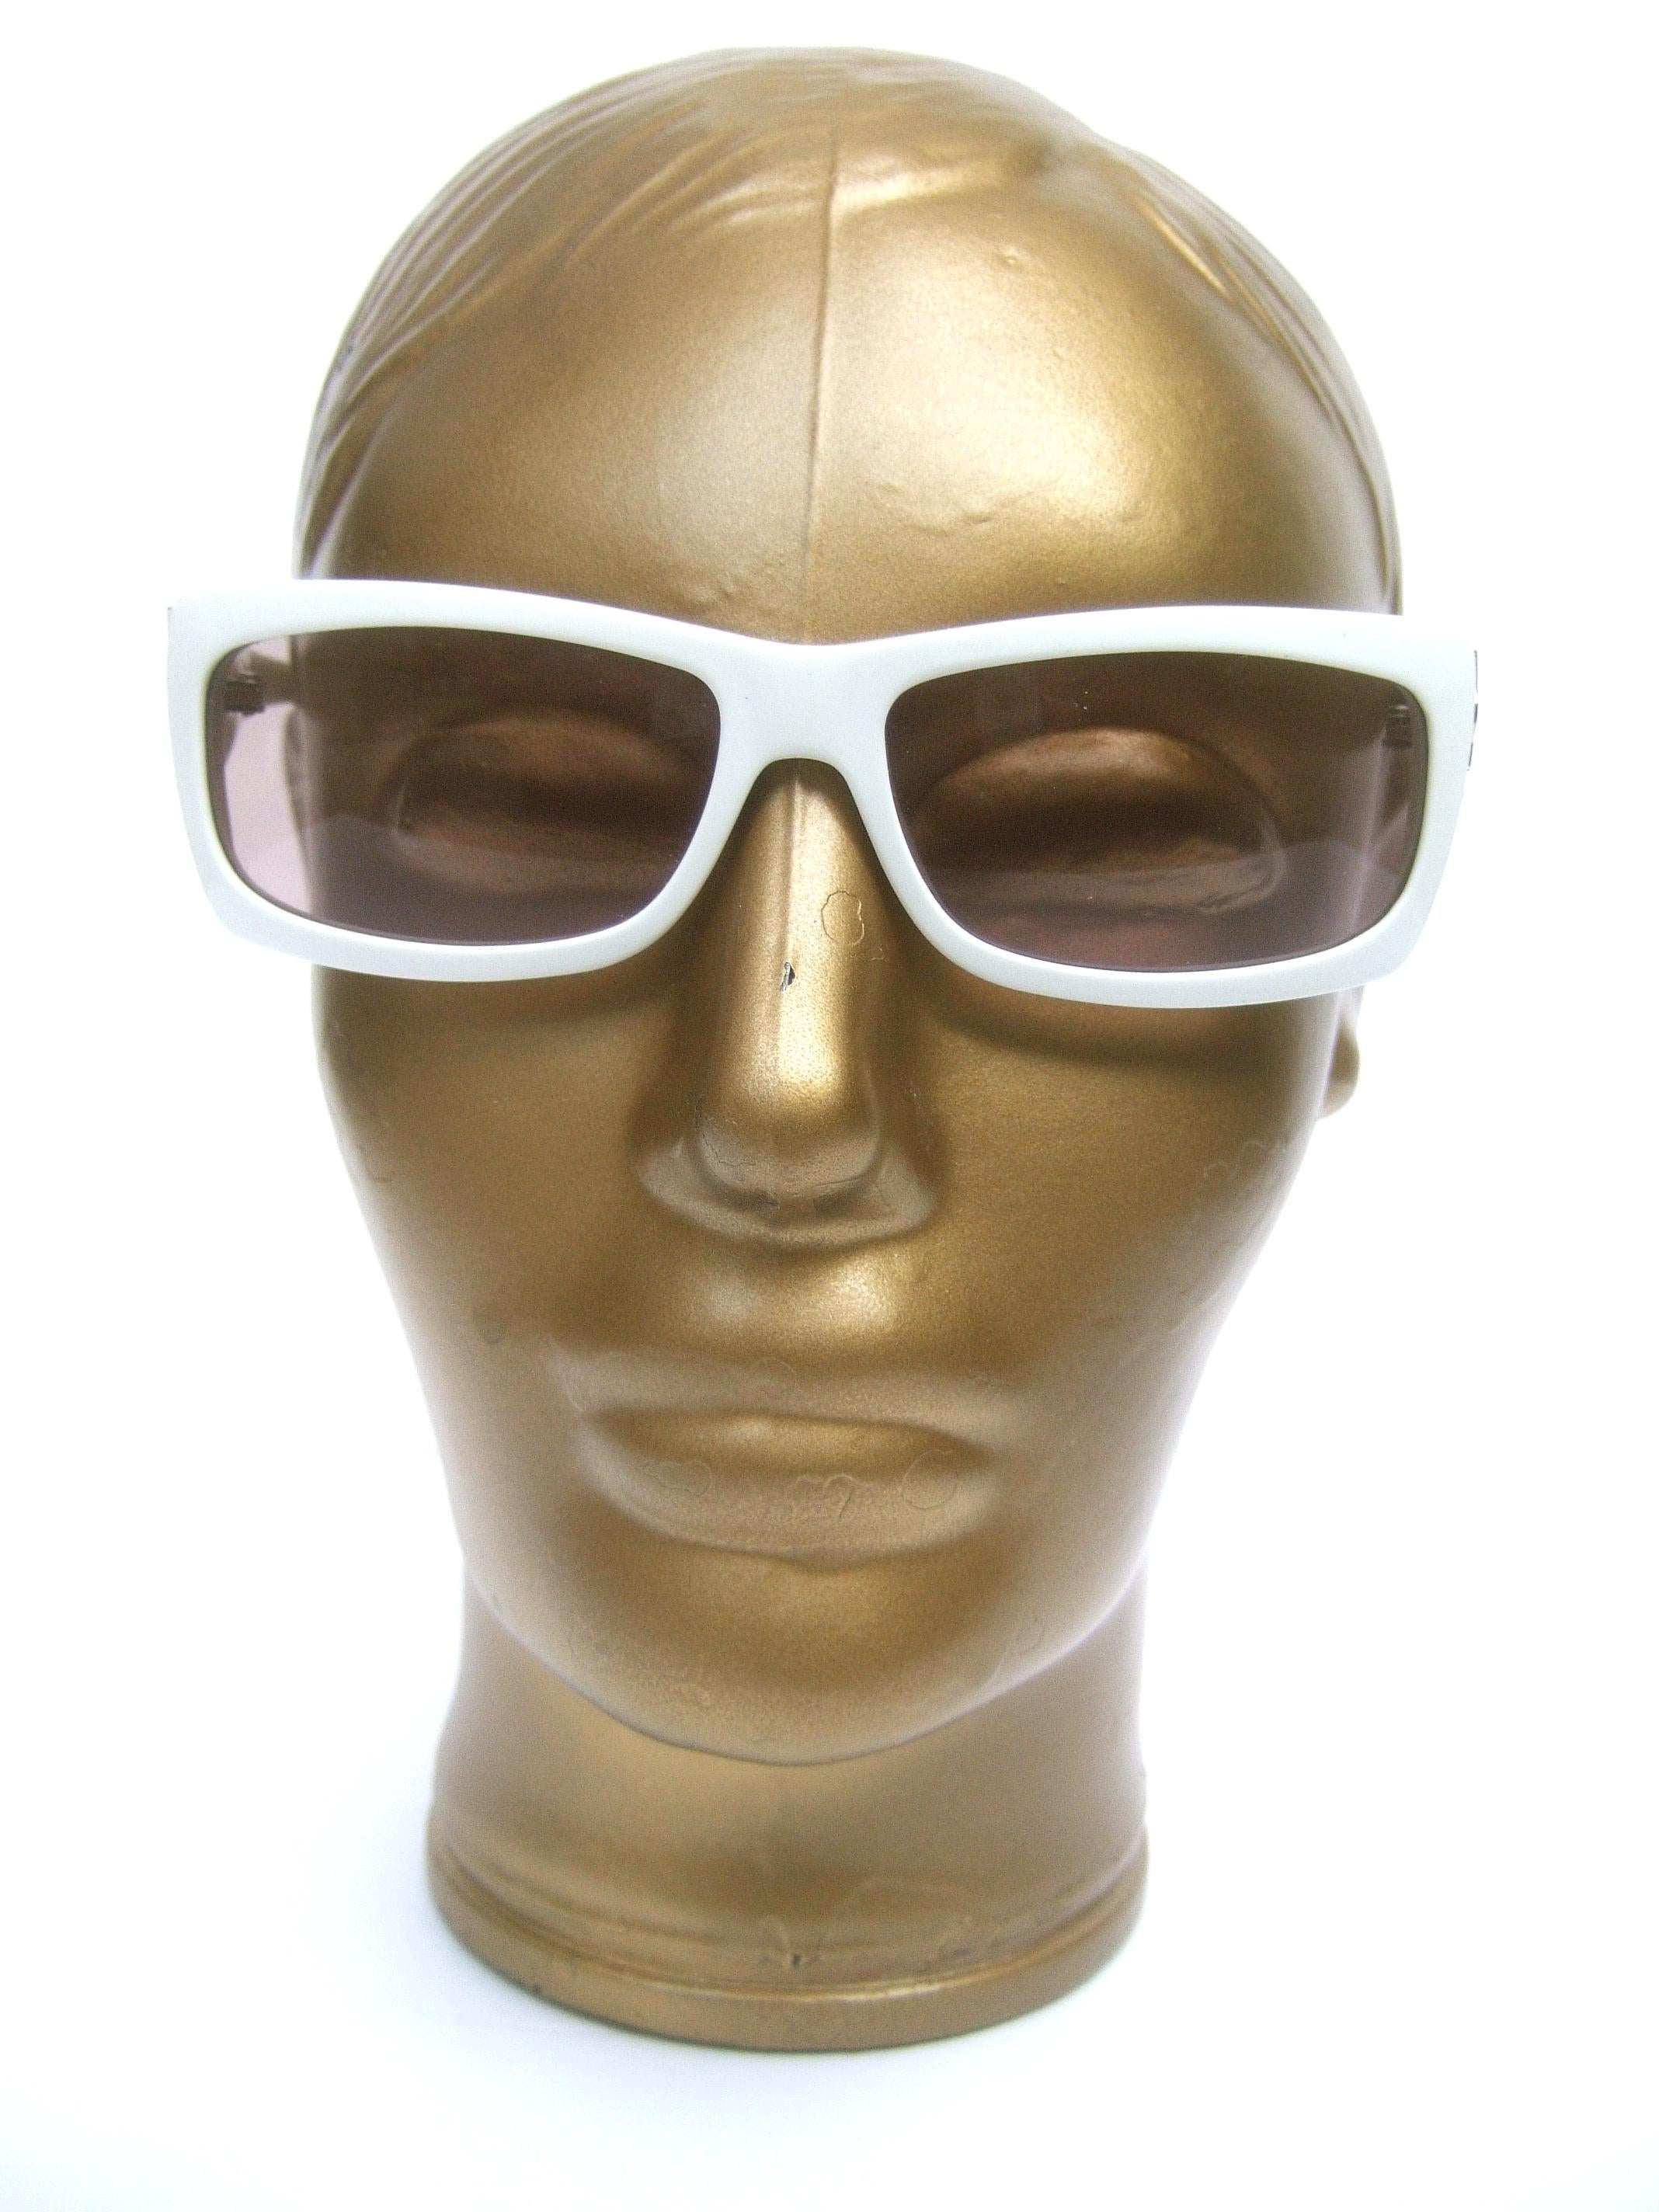 Gray Yves Saint Laurent Italian White Plastic Frame Sunglasses in YSL Case c 1990s